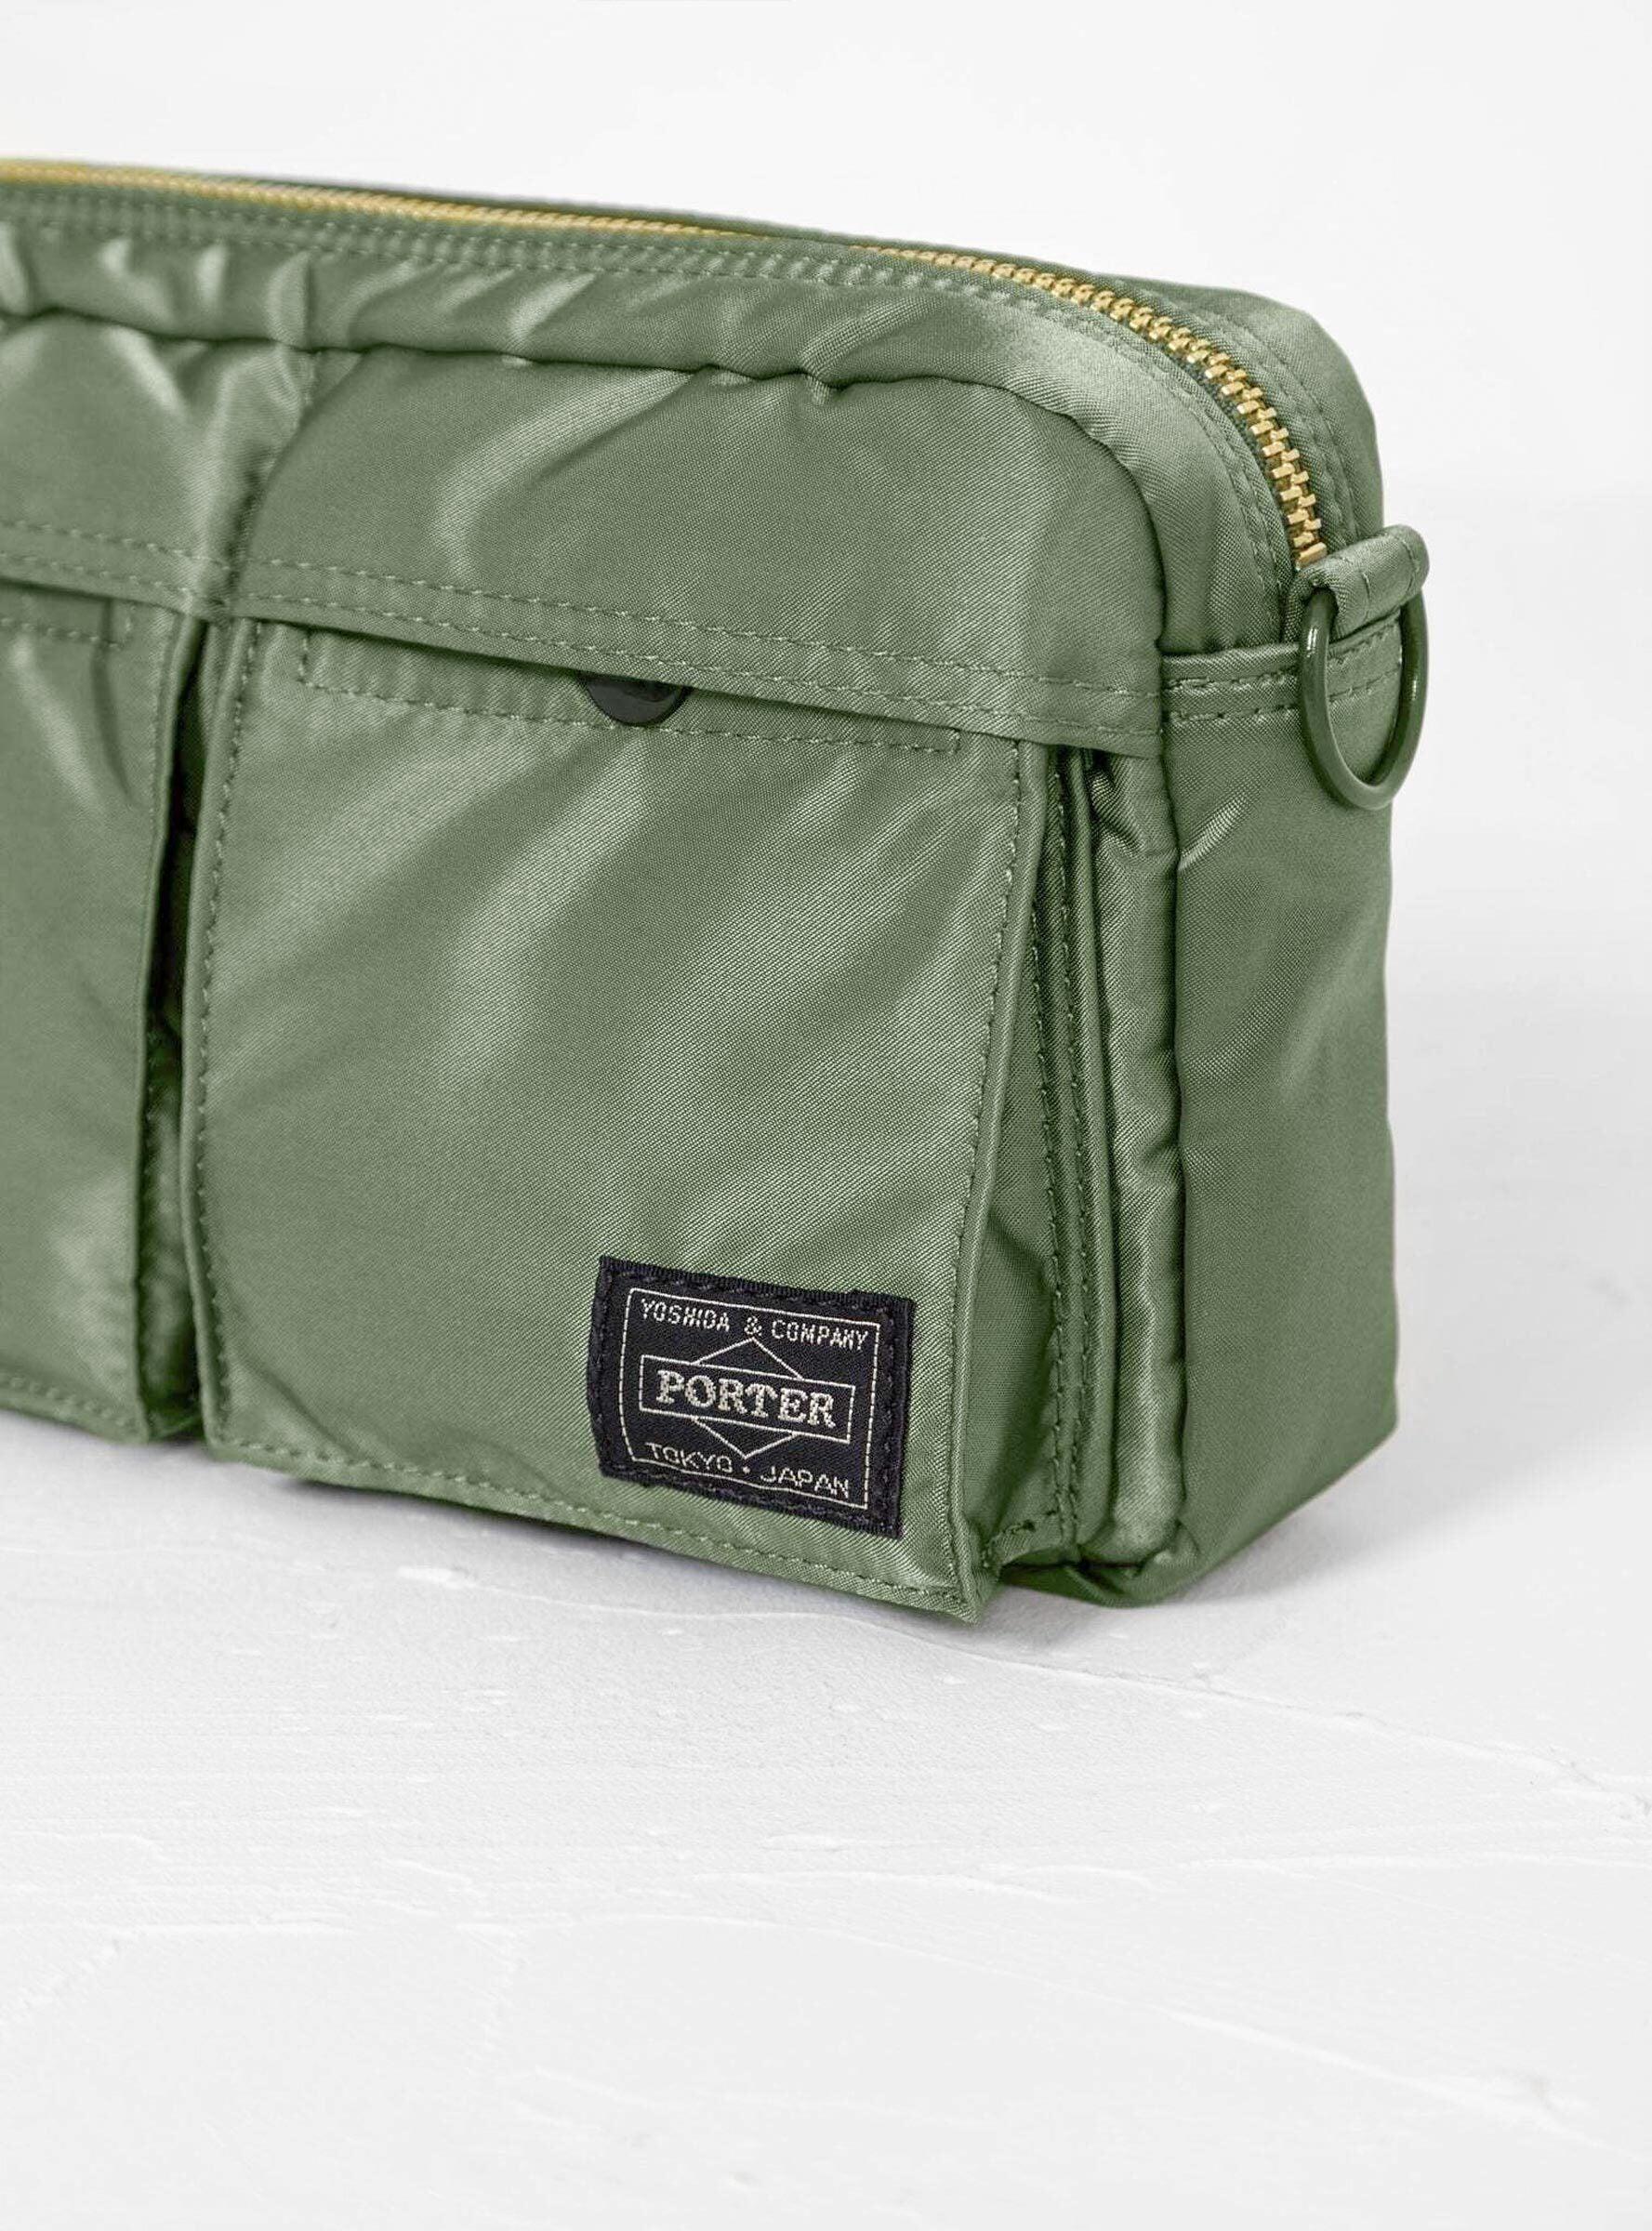 Porter TANKER SHOULDER BAG - SAGE GREEN on Garmentory